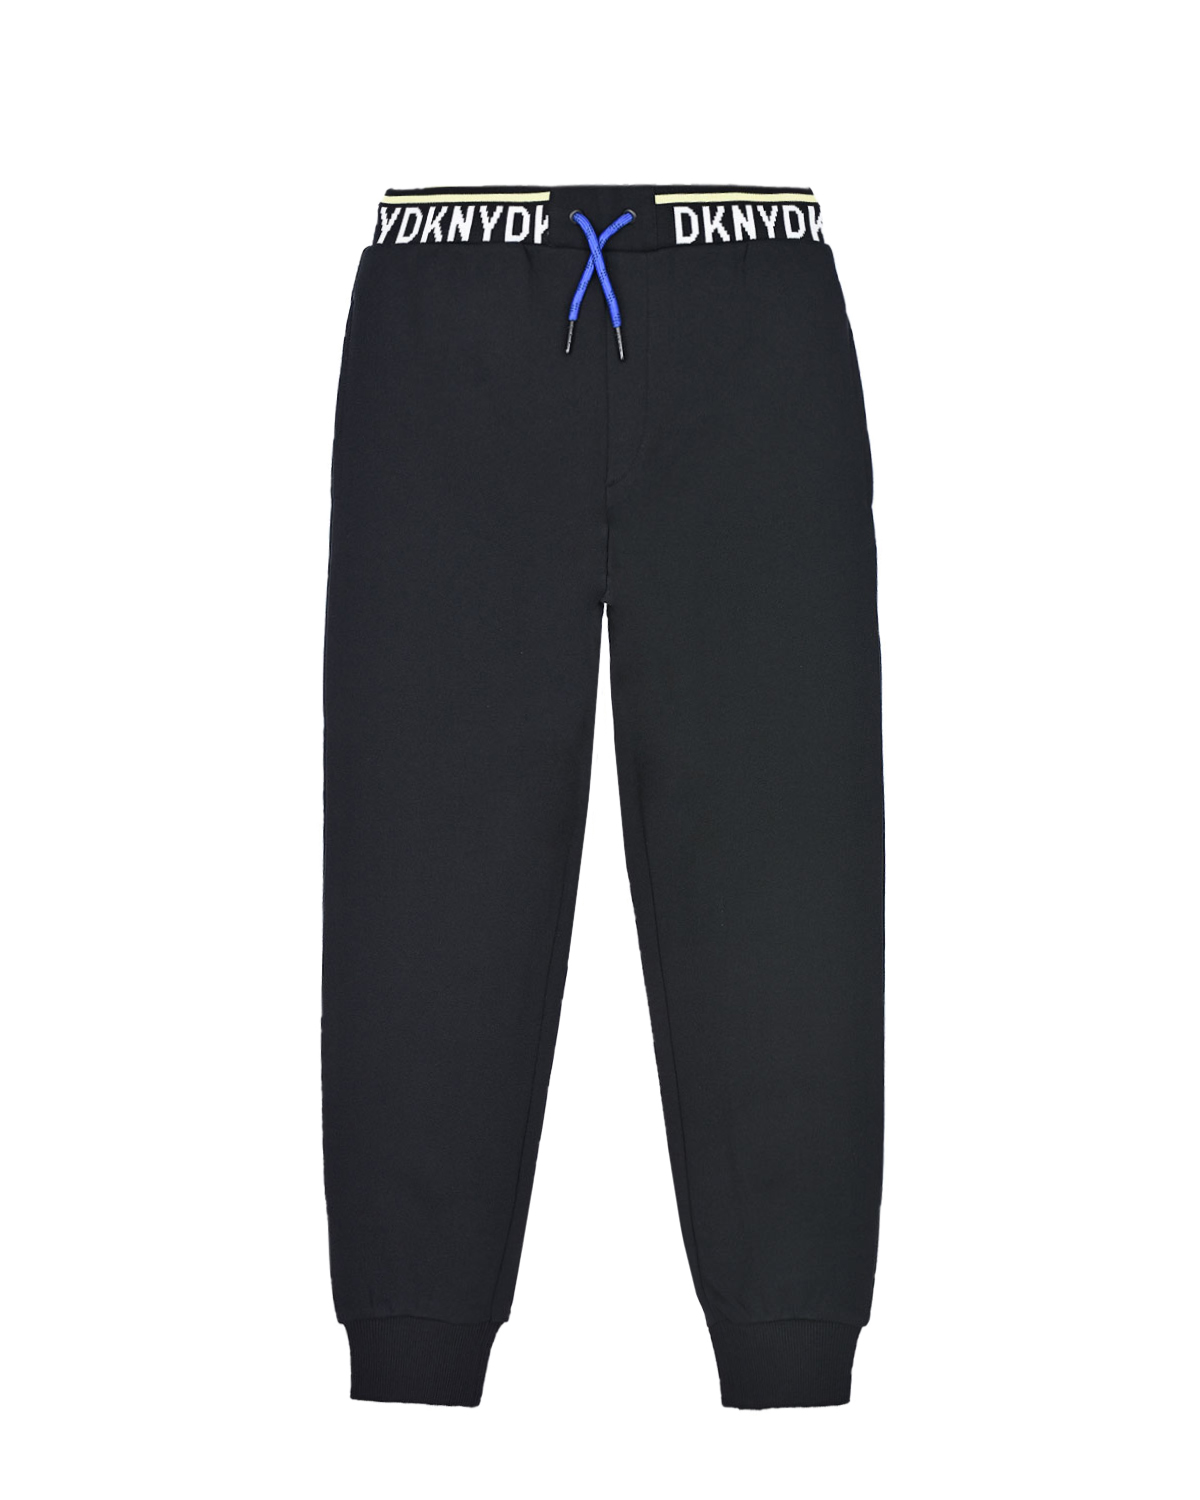 Черные спортивные брюки с логотипом DKNY детские, размер 140, цвет черный - фото 1